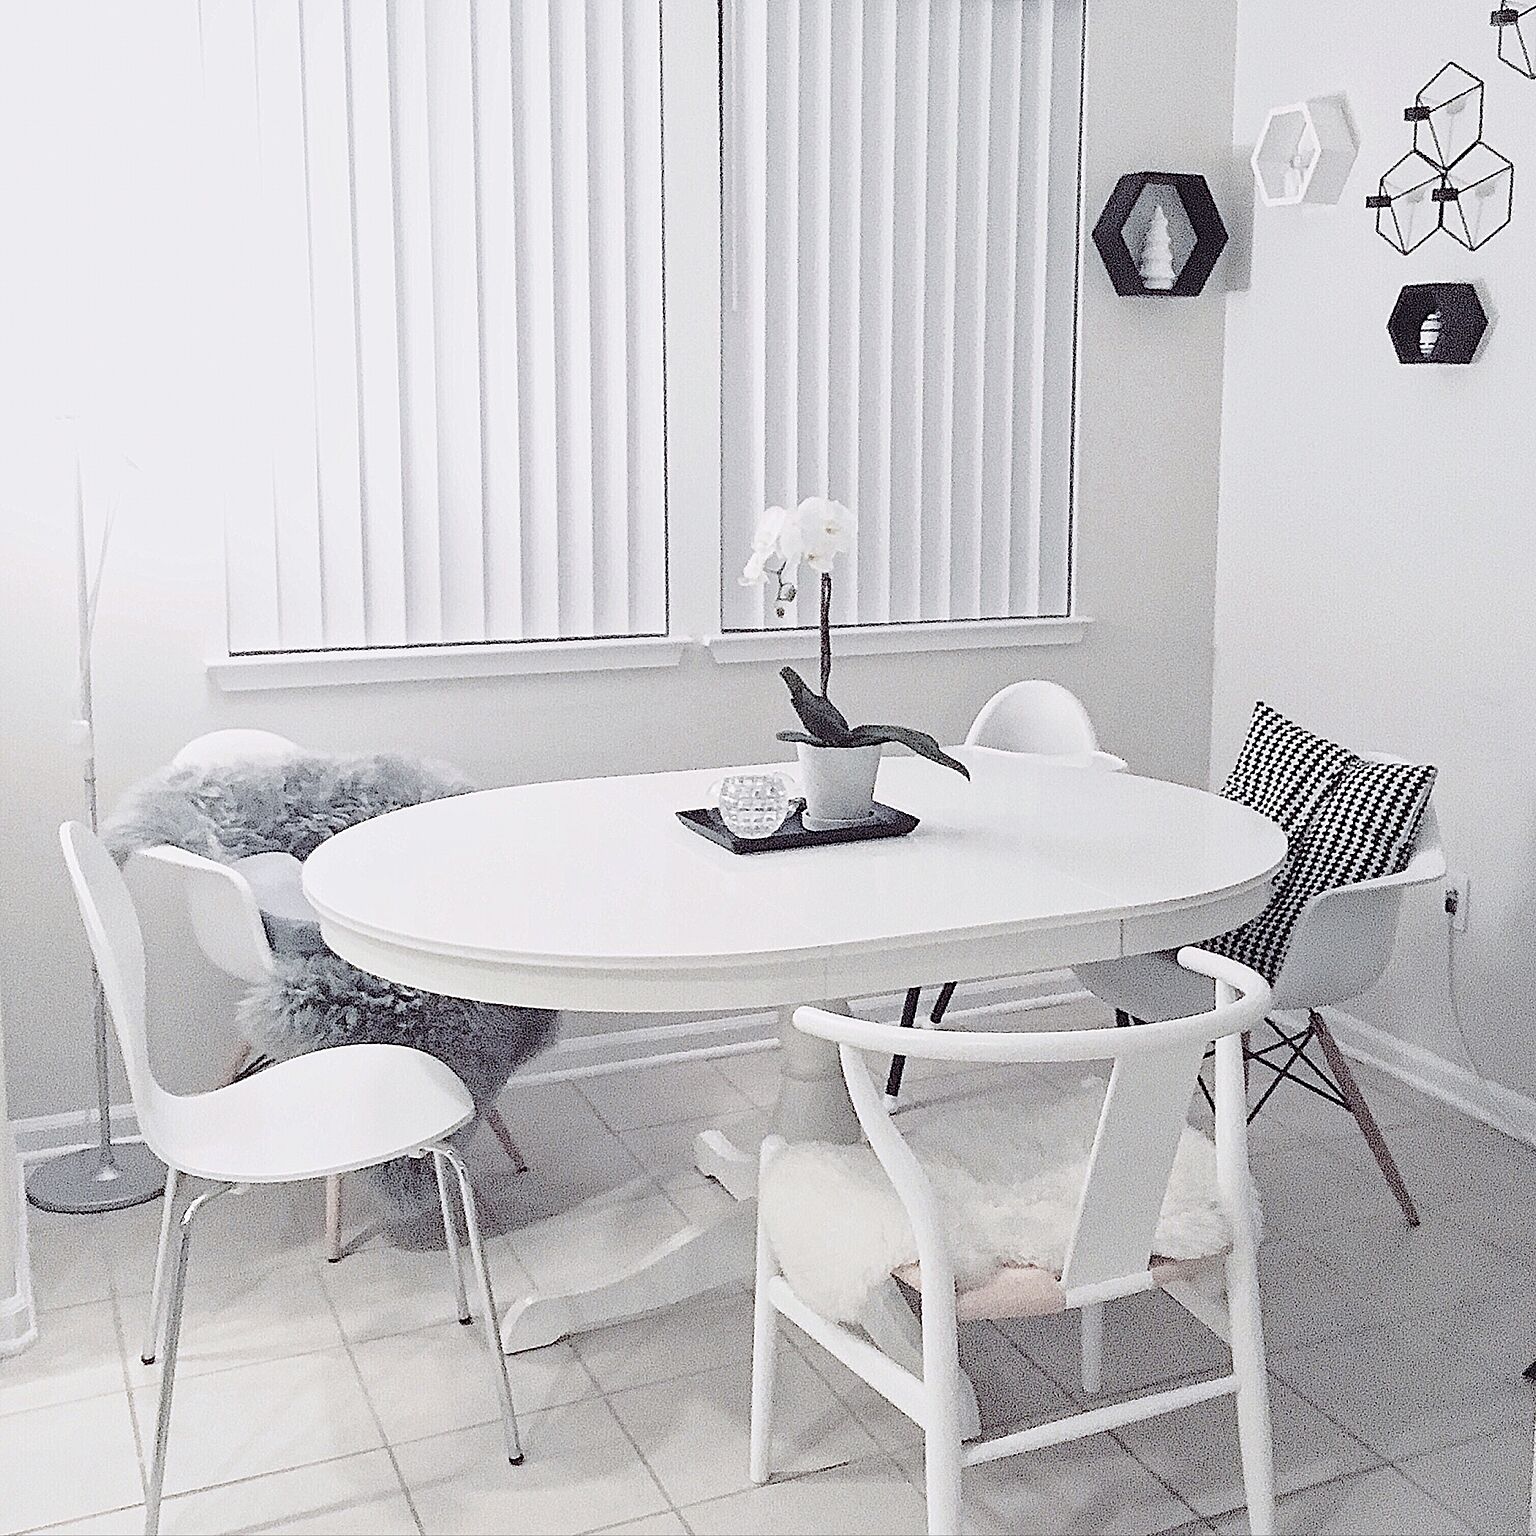 楕円の一本脚テーブルでお部屋を広く見せて柔らかさを強調。いろいろな形のチェアを合わせて楽しい雰囲気で。